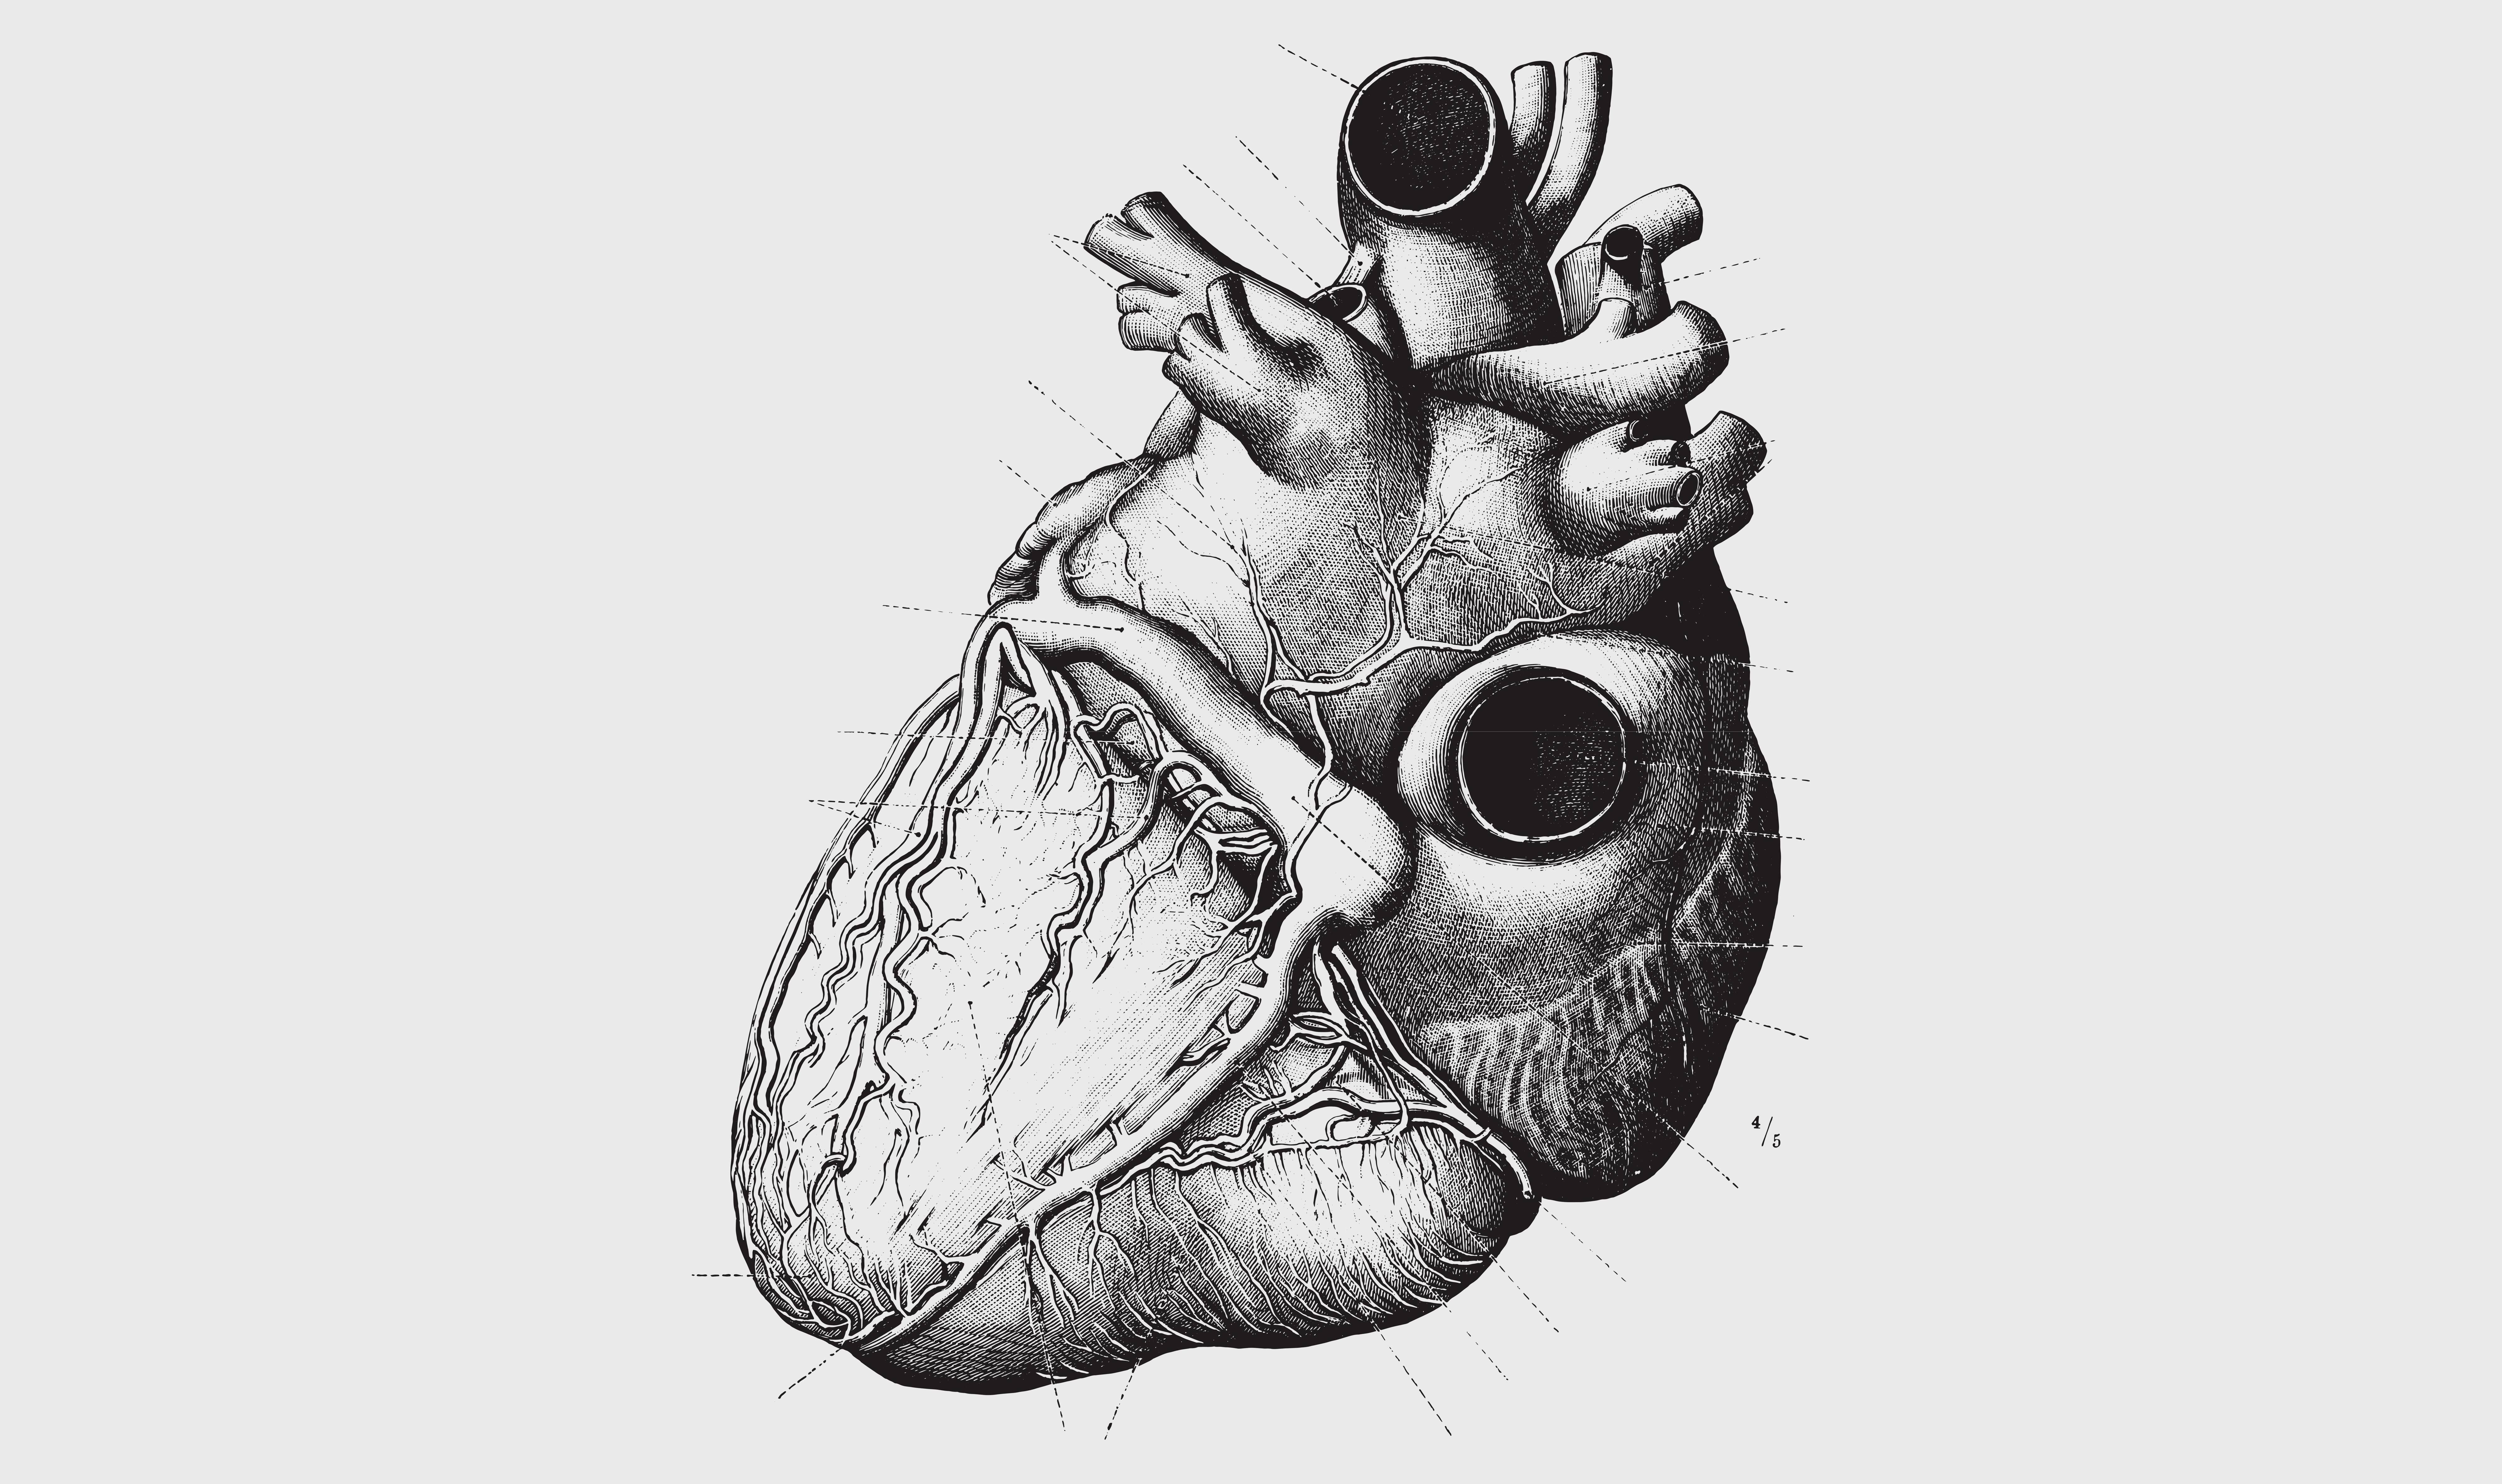 William Harvey découvre la circulation sanguine et l’importance du cœur dans la propulsion et la circulation du sang